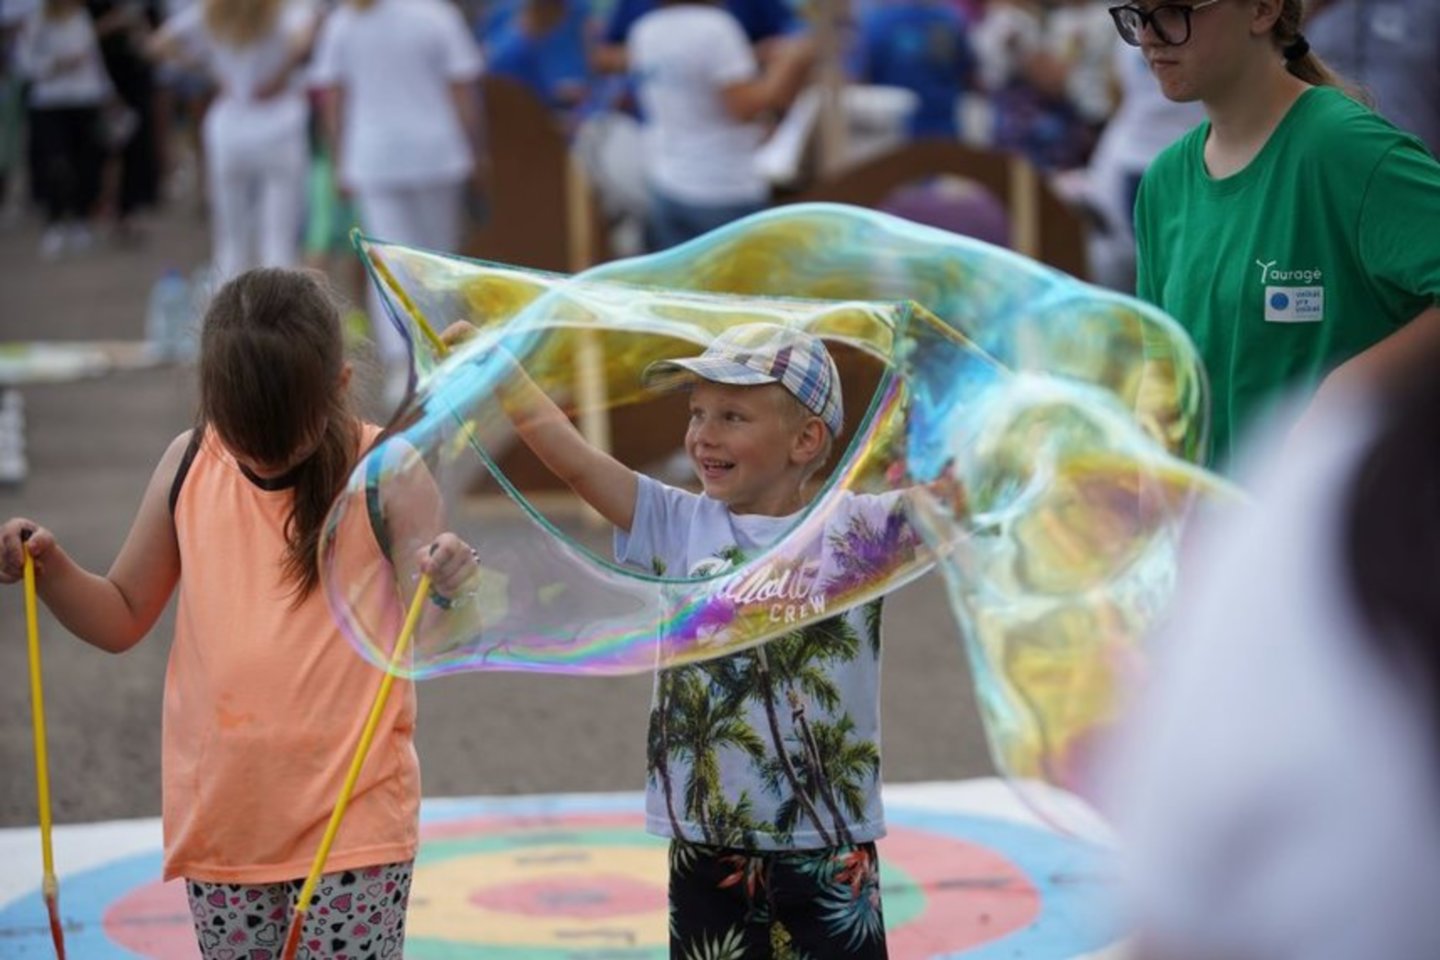  Globėjų festivalyje "Vaikai yra vaikai" netrūko smagių veiklų.<br> Pranešimo siuntėjų nuotr.